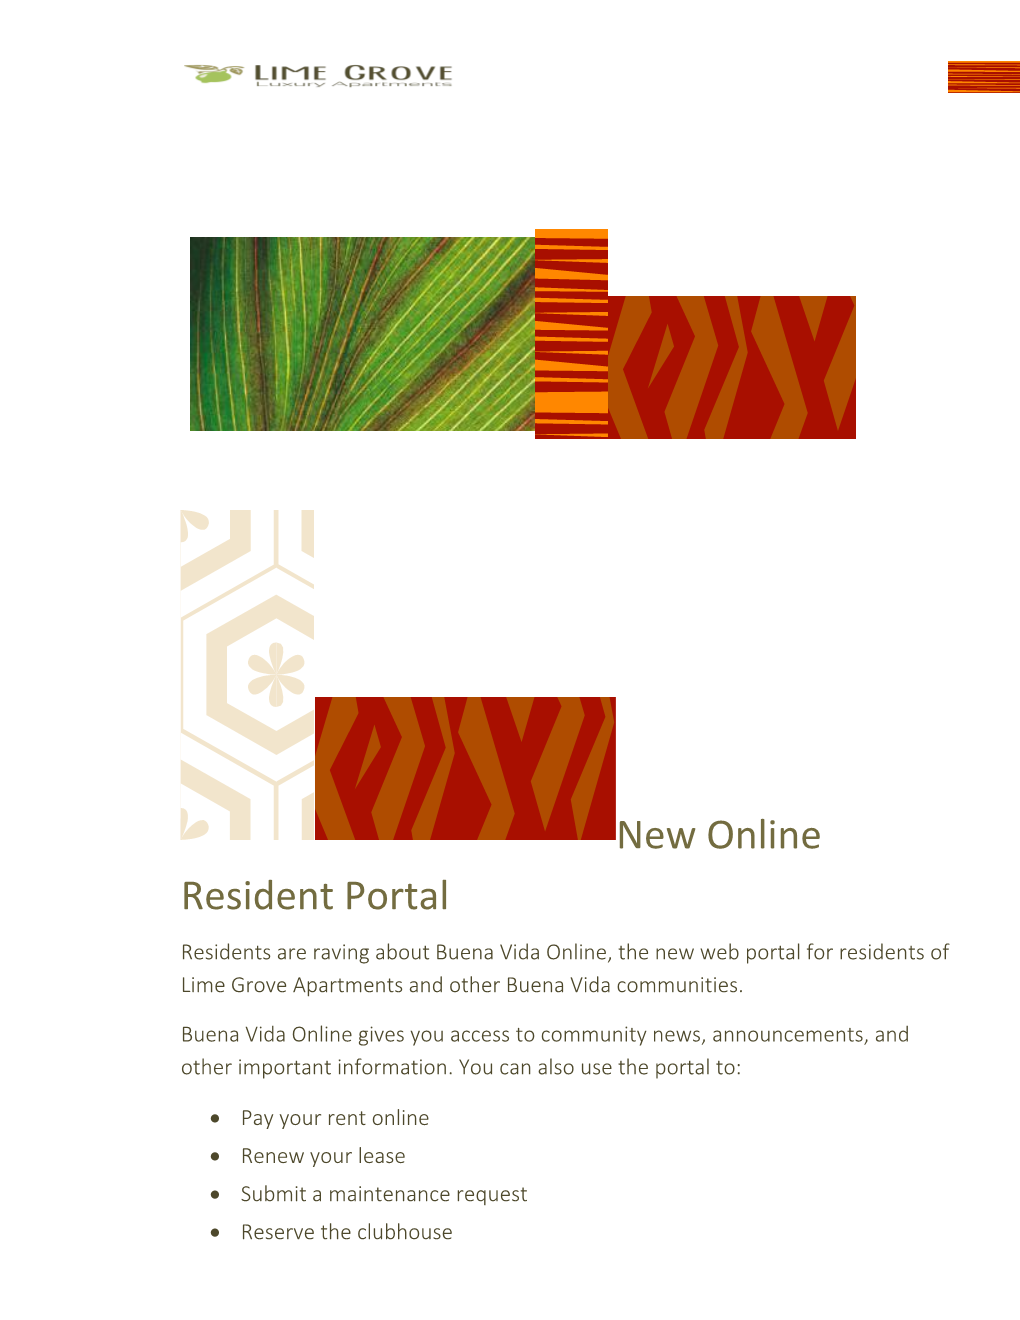 New Online Resident Portal